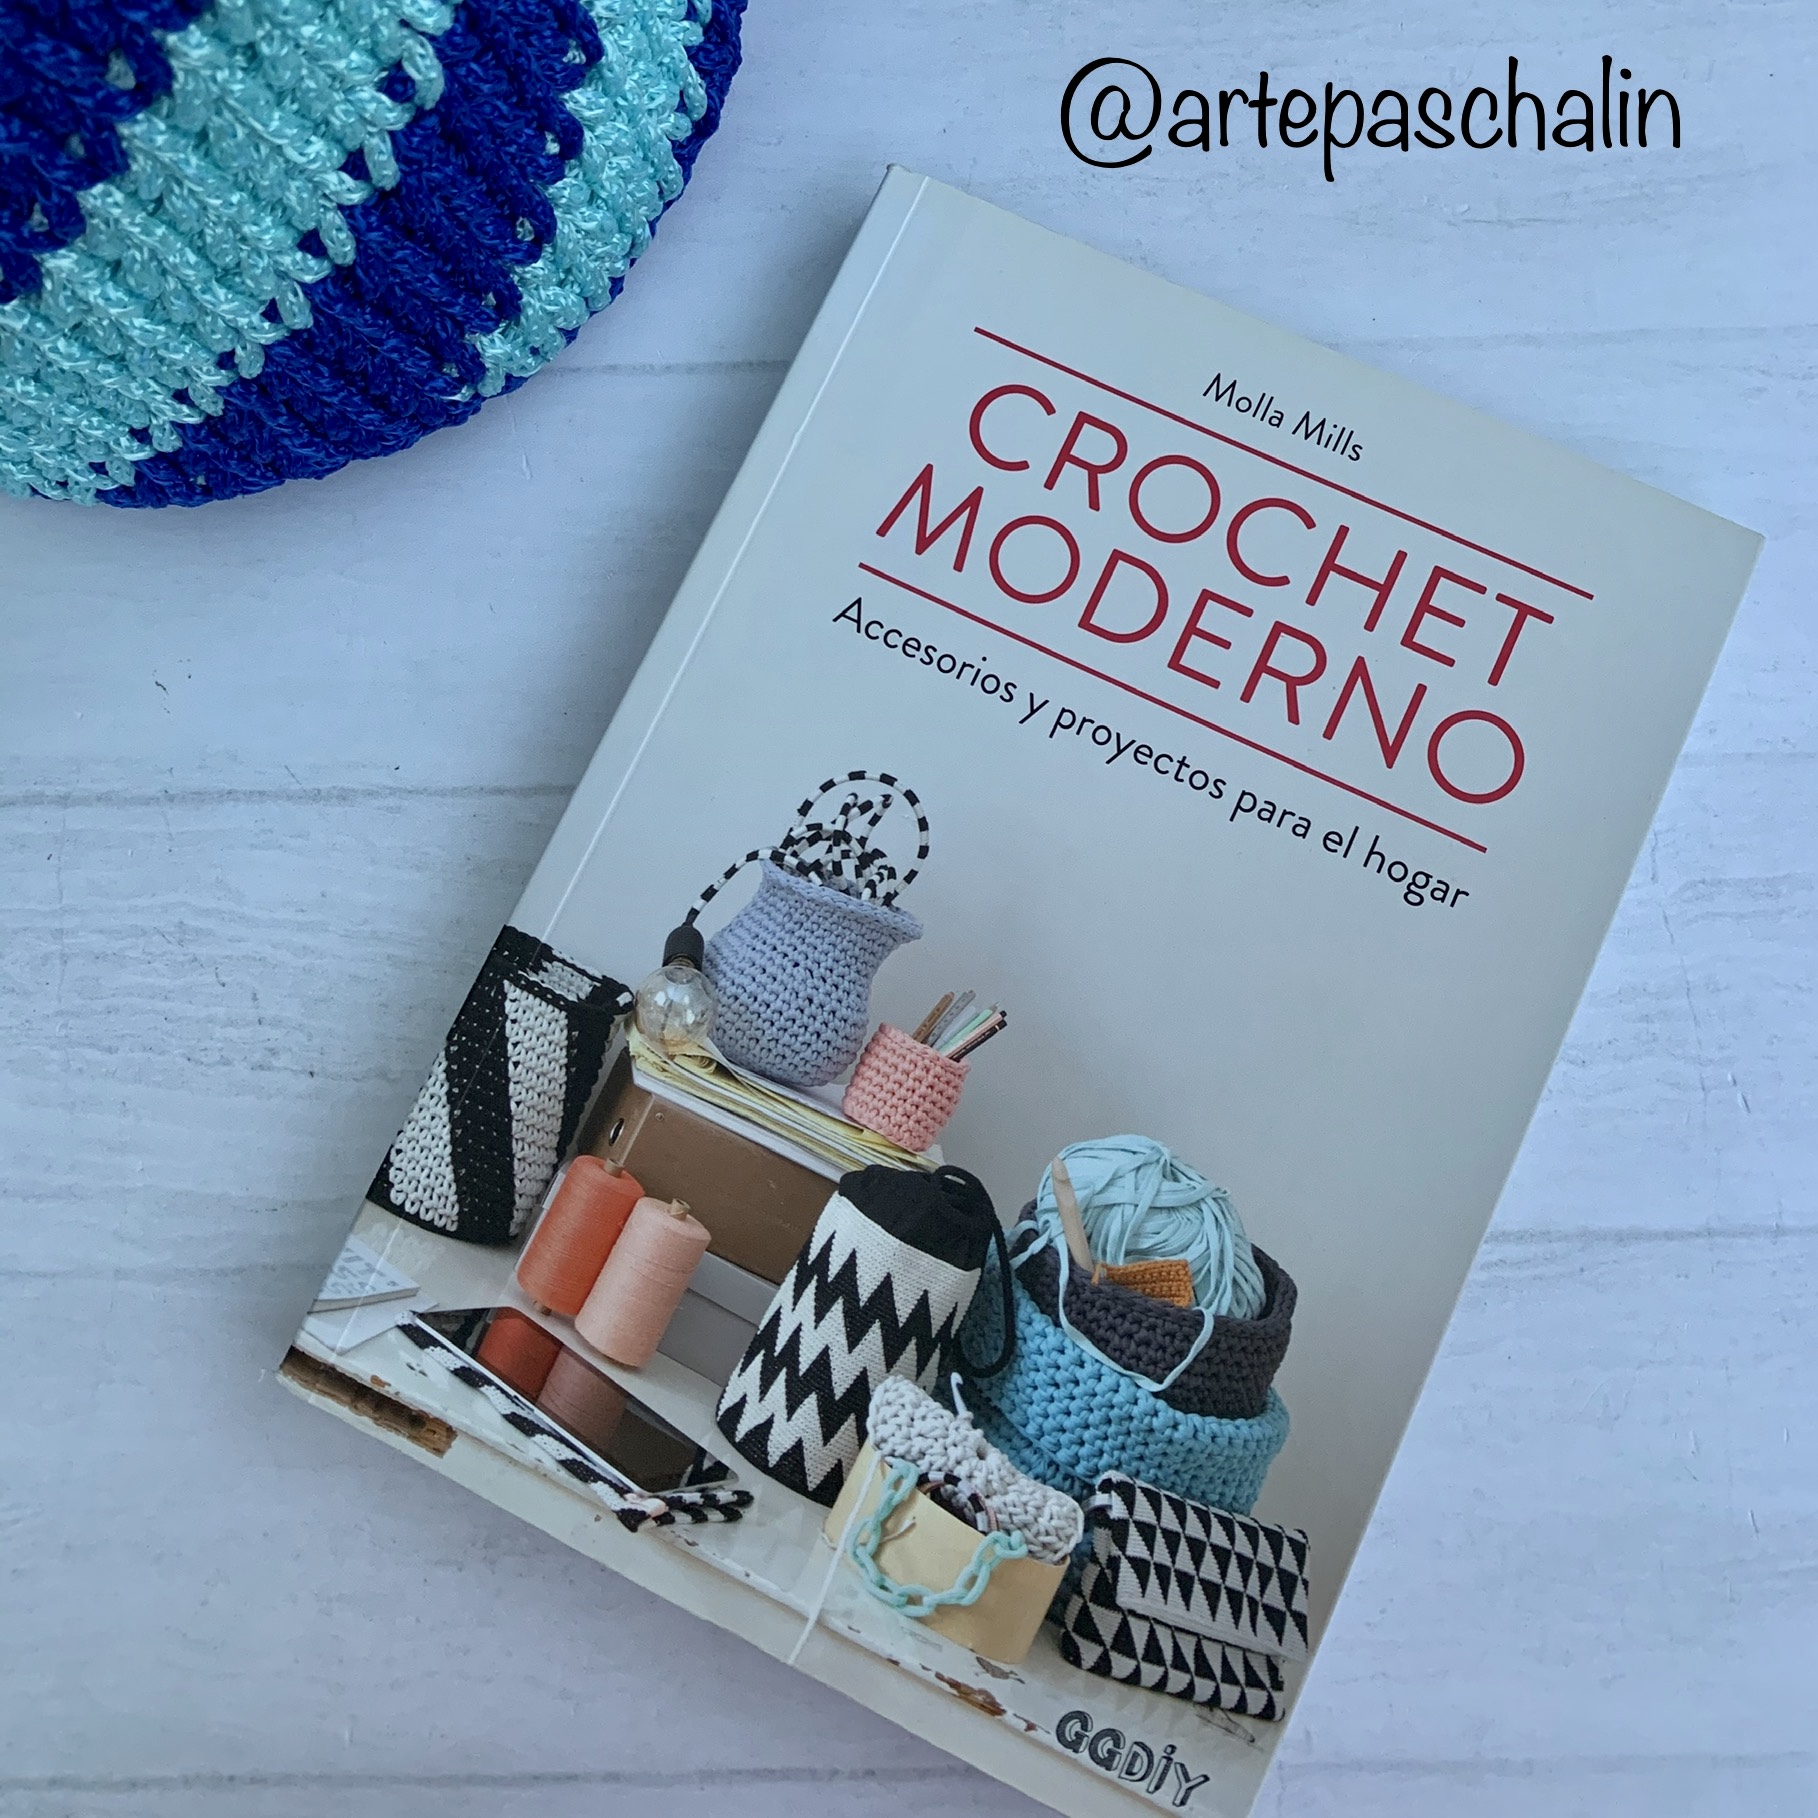 Libros para Principiantes: Crochet Moderno de Molla Mills - Arte Paschalin